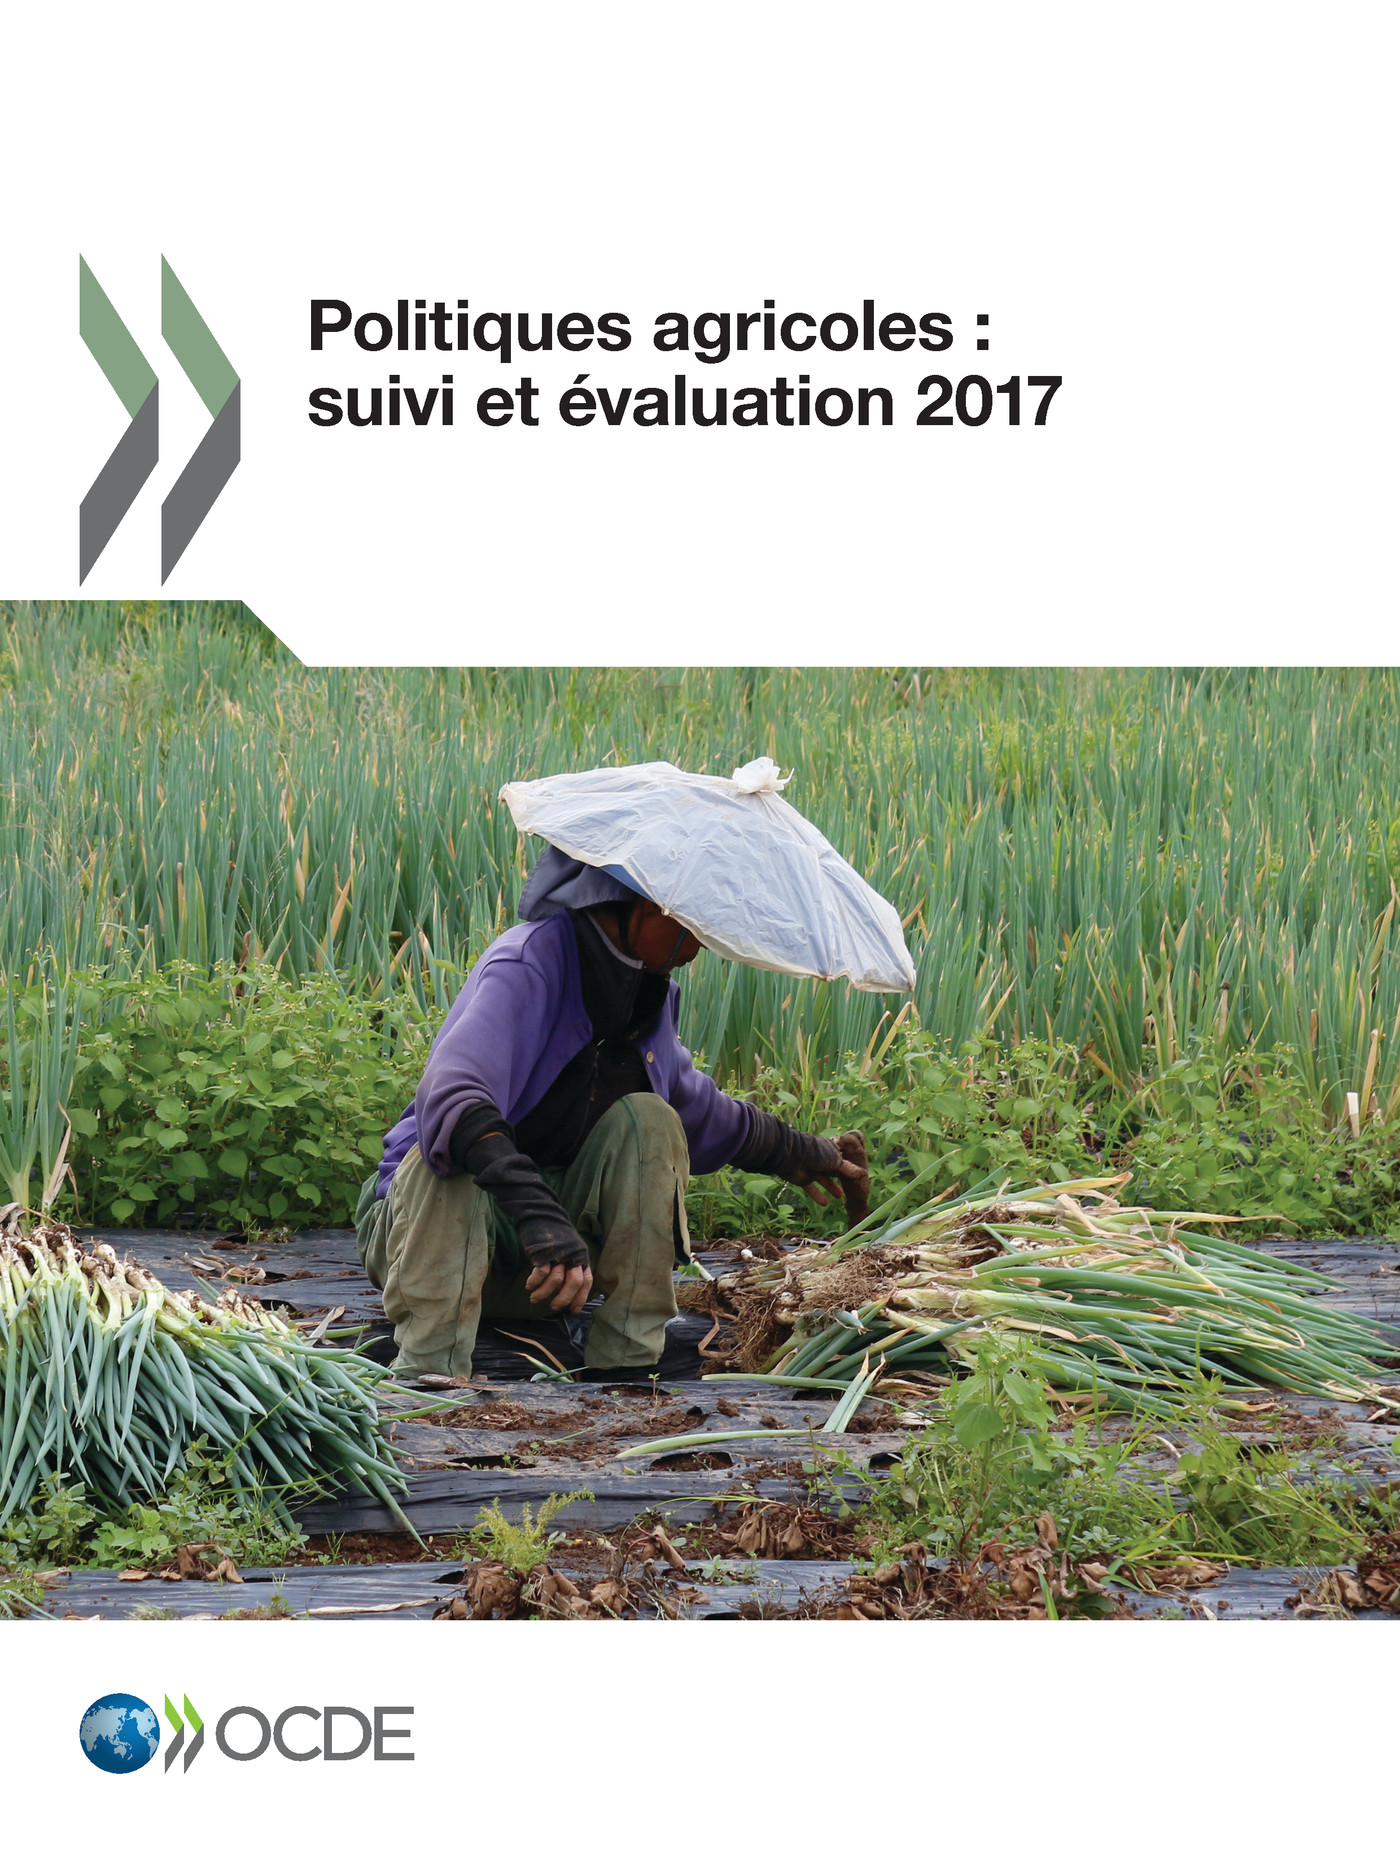 Politiques agricoles : suivi et évaluation 2017 -  Collectif - OCDE / OECD